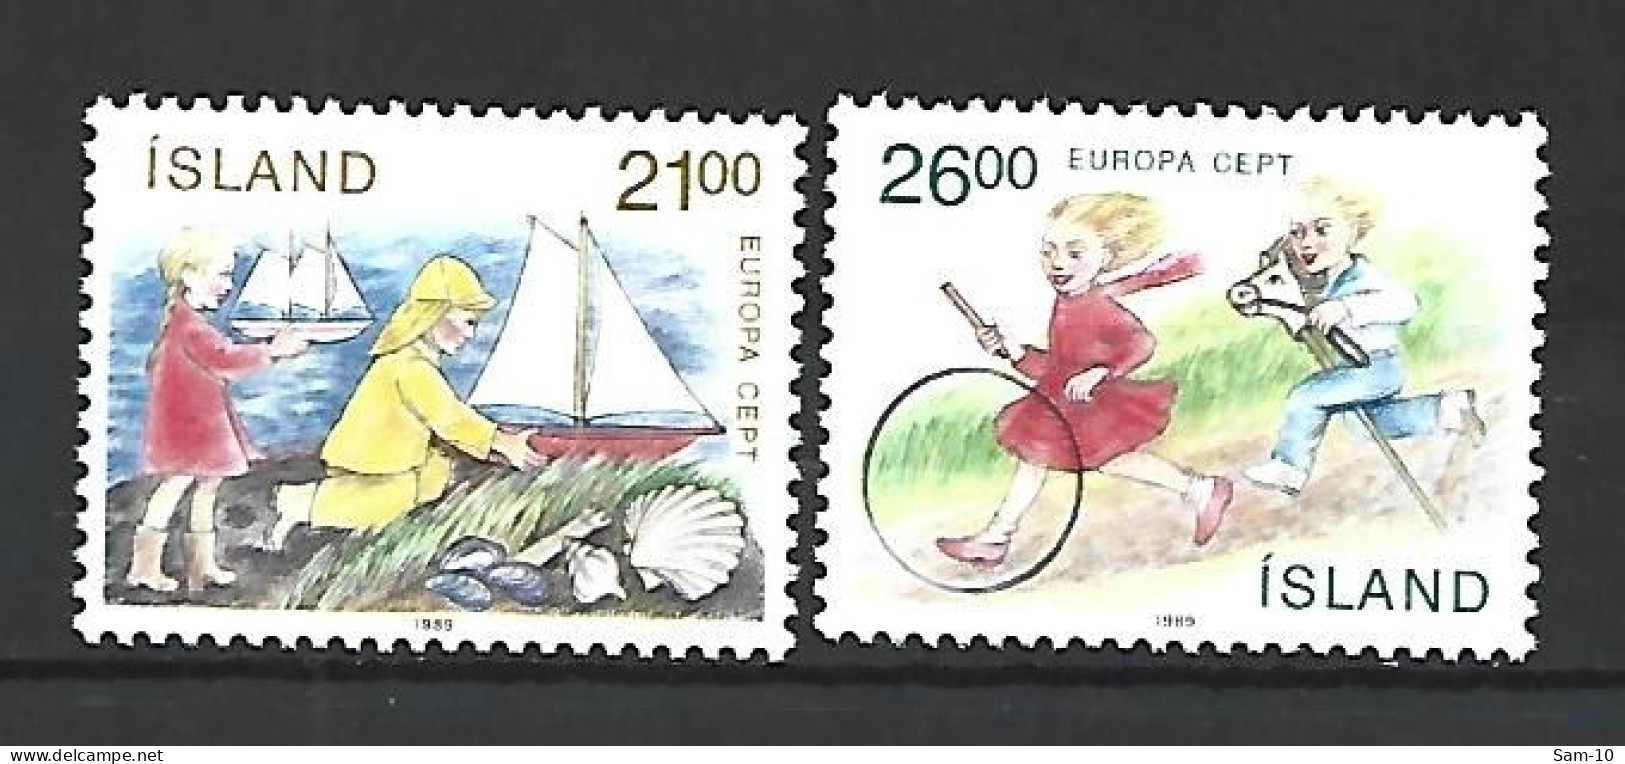 Timbre De Europa Neuf ** Islande N 654 / 655 - 1989